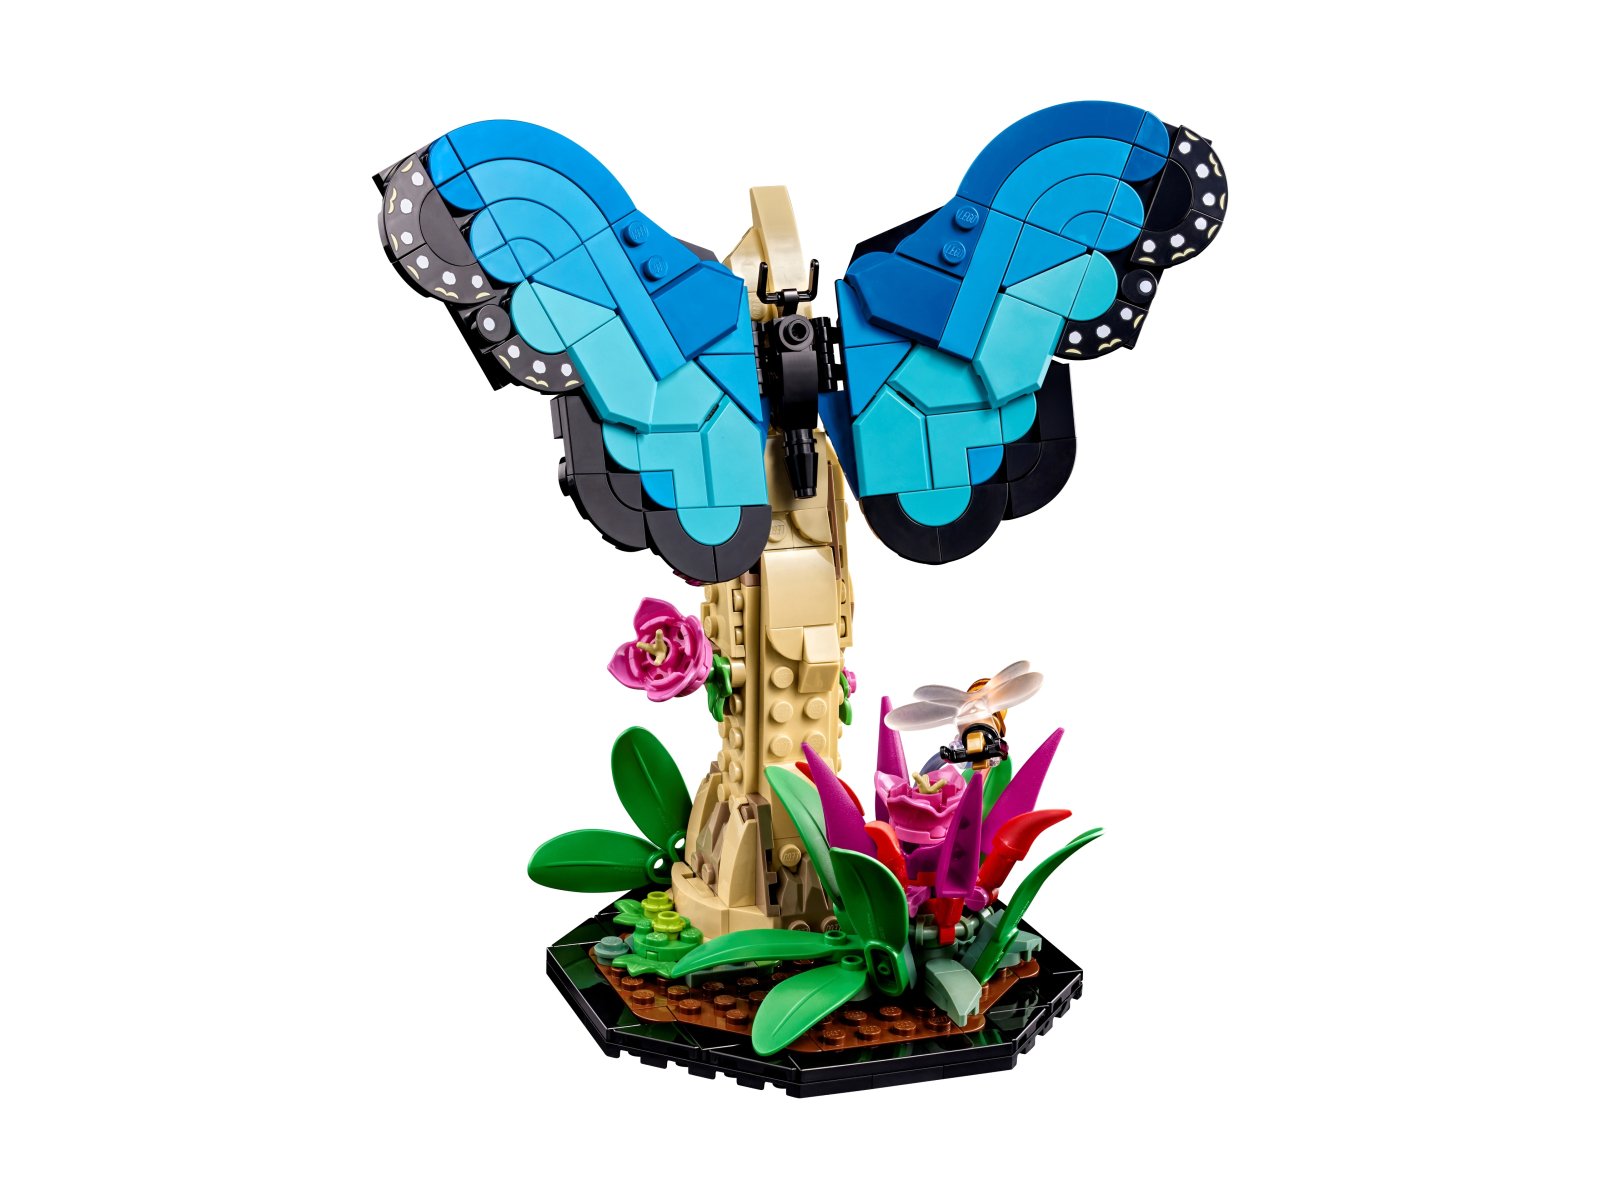 LEGO Ideas Kolekcja owadów 21342